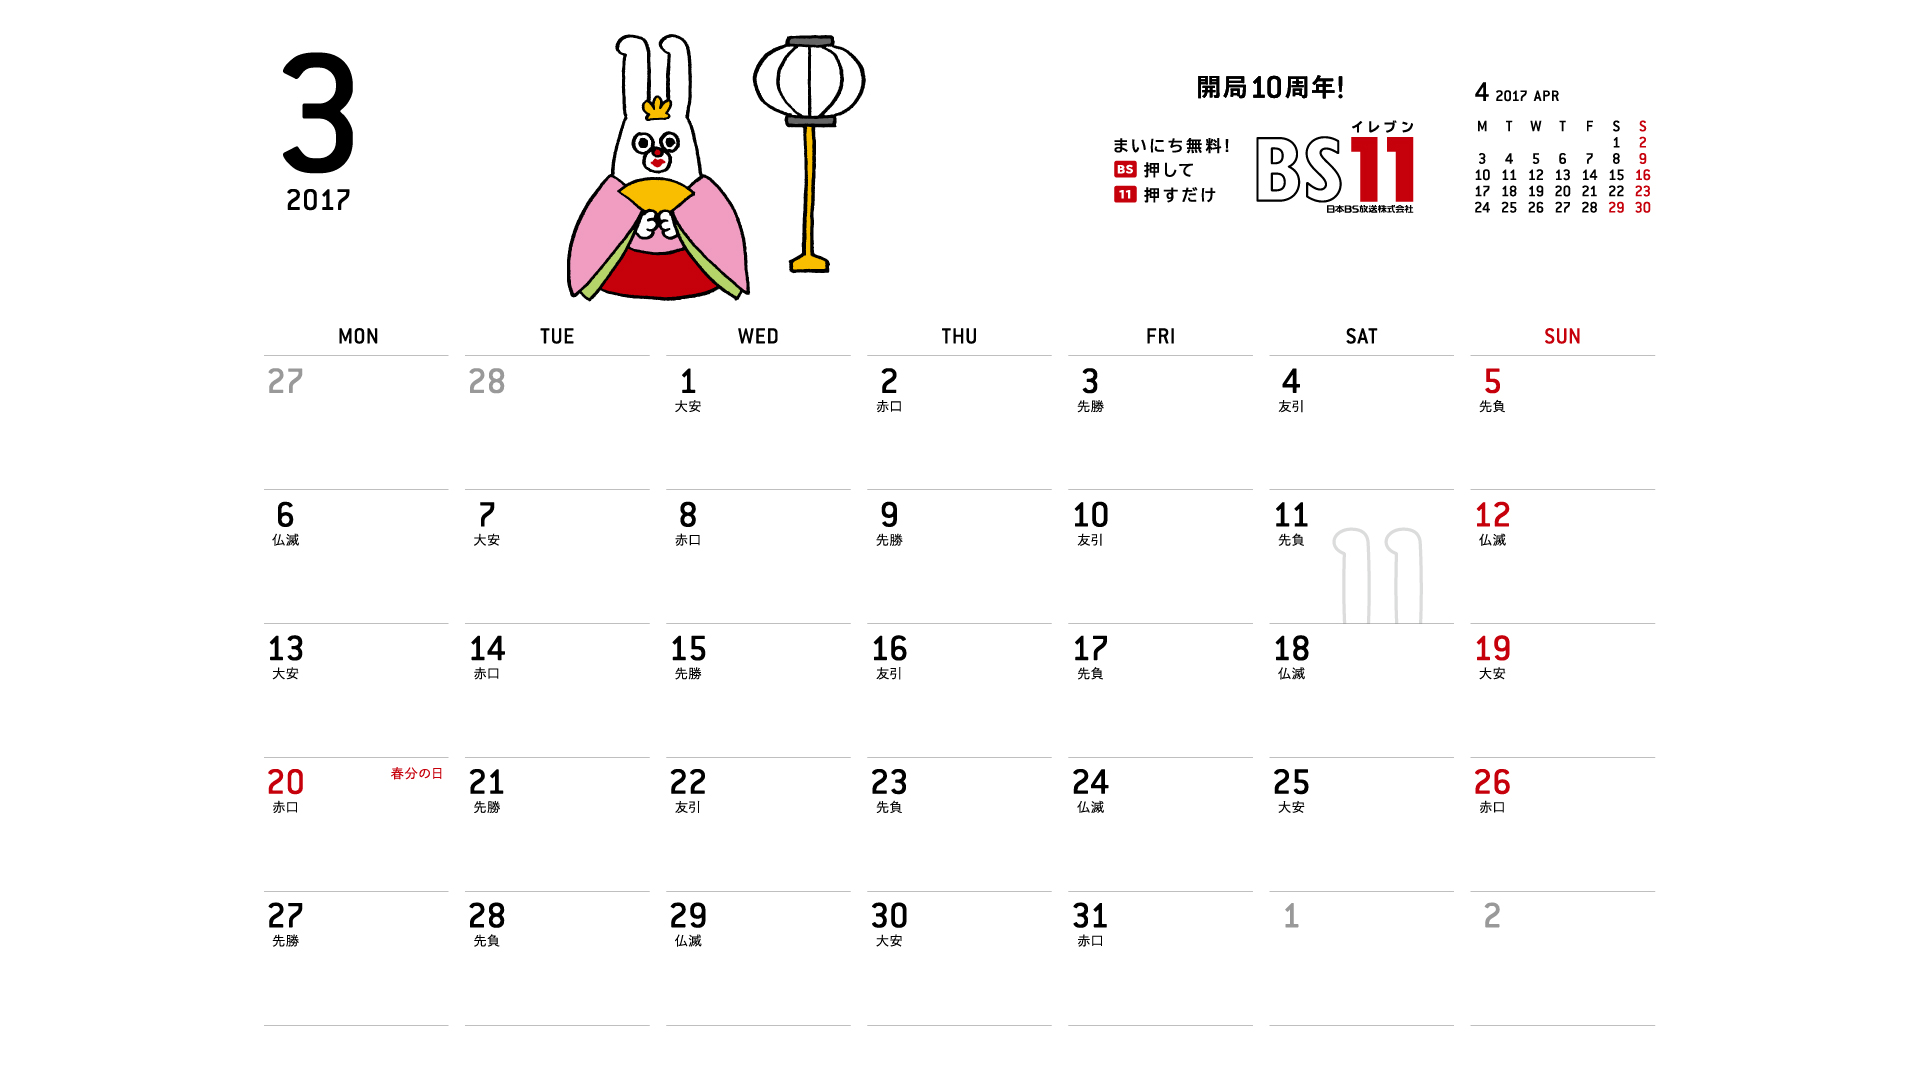 じゅういっちゃんのデジタルカレンダー17年03月 Bs11 イレブン いつでも無料放送